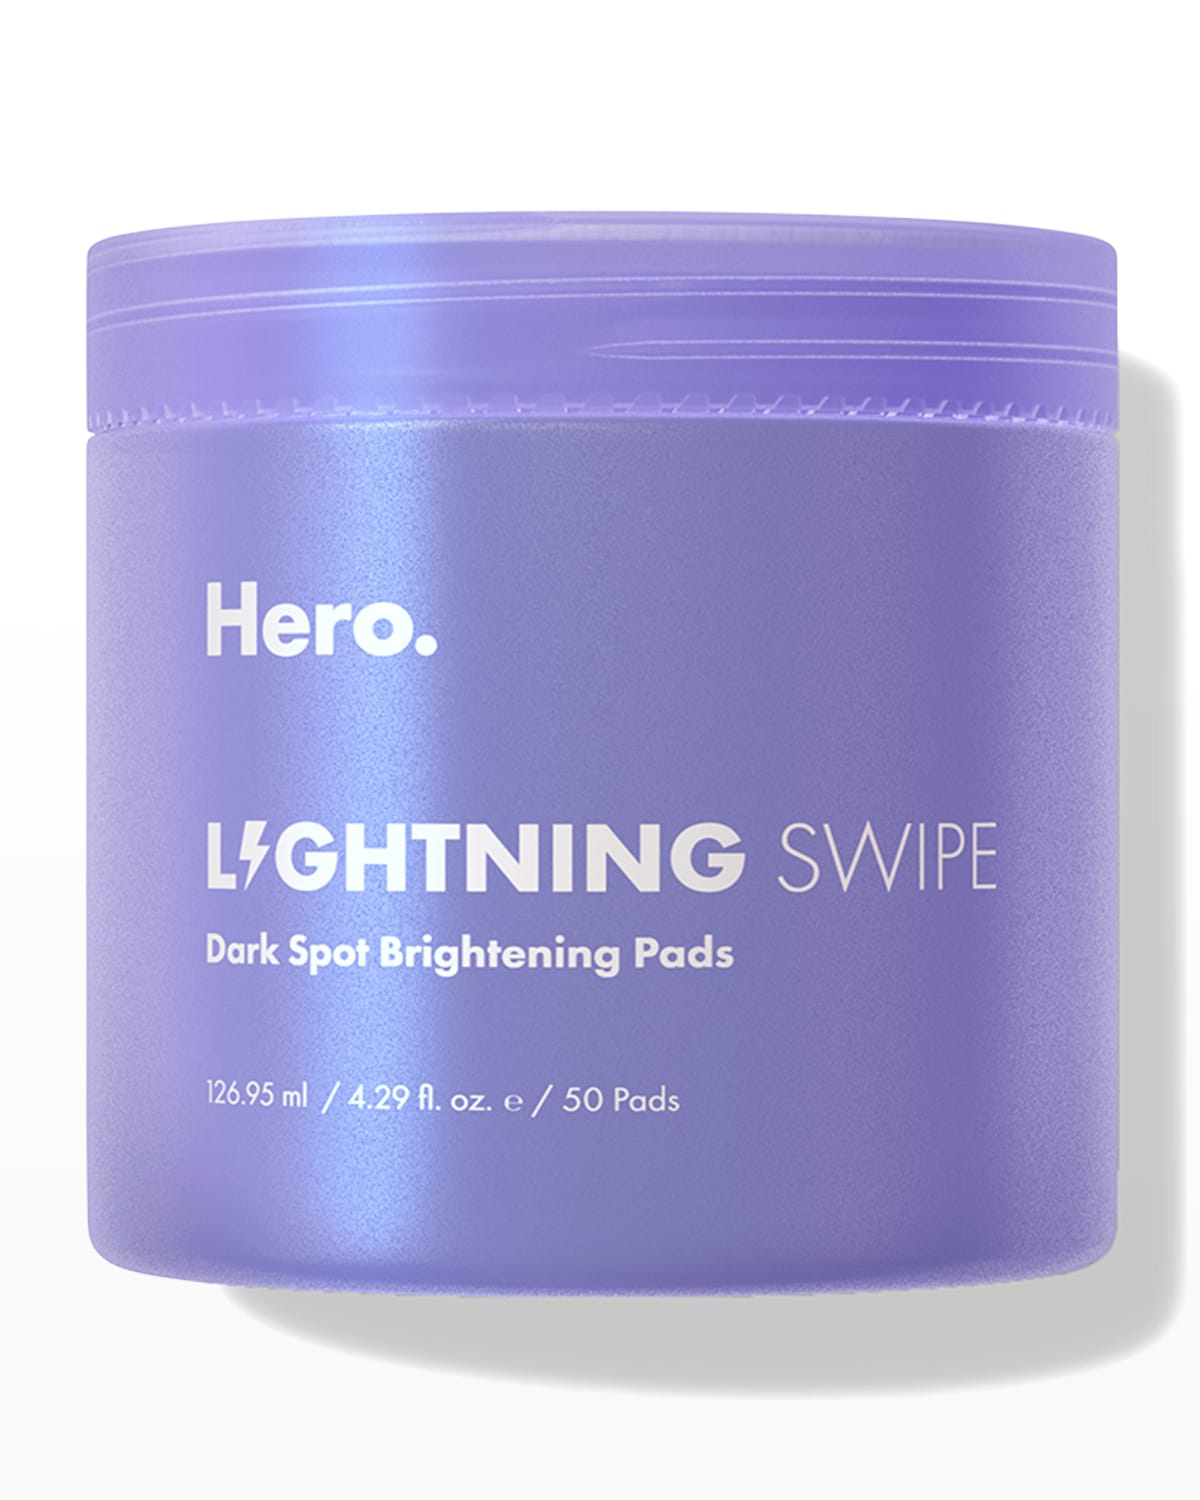 Hero Cosmetics Lightning Swipe Dark Spot Brightening Pads, 50ct